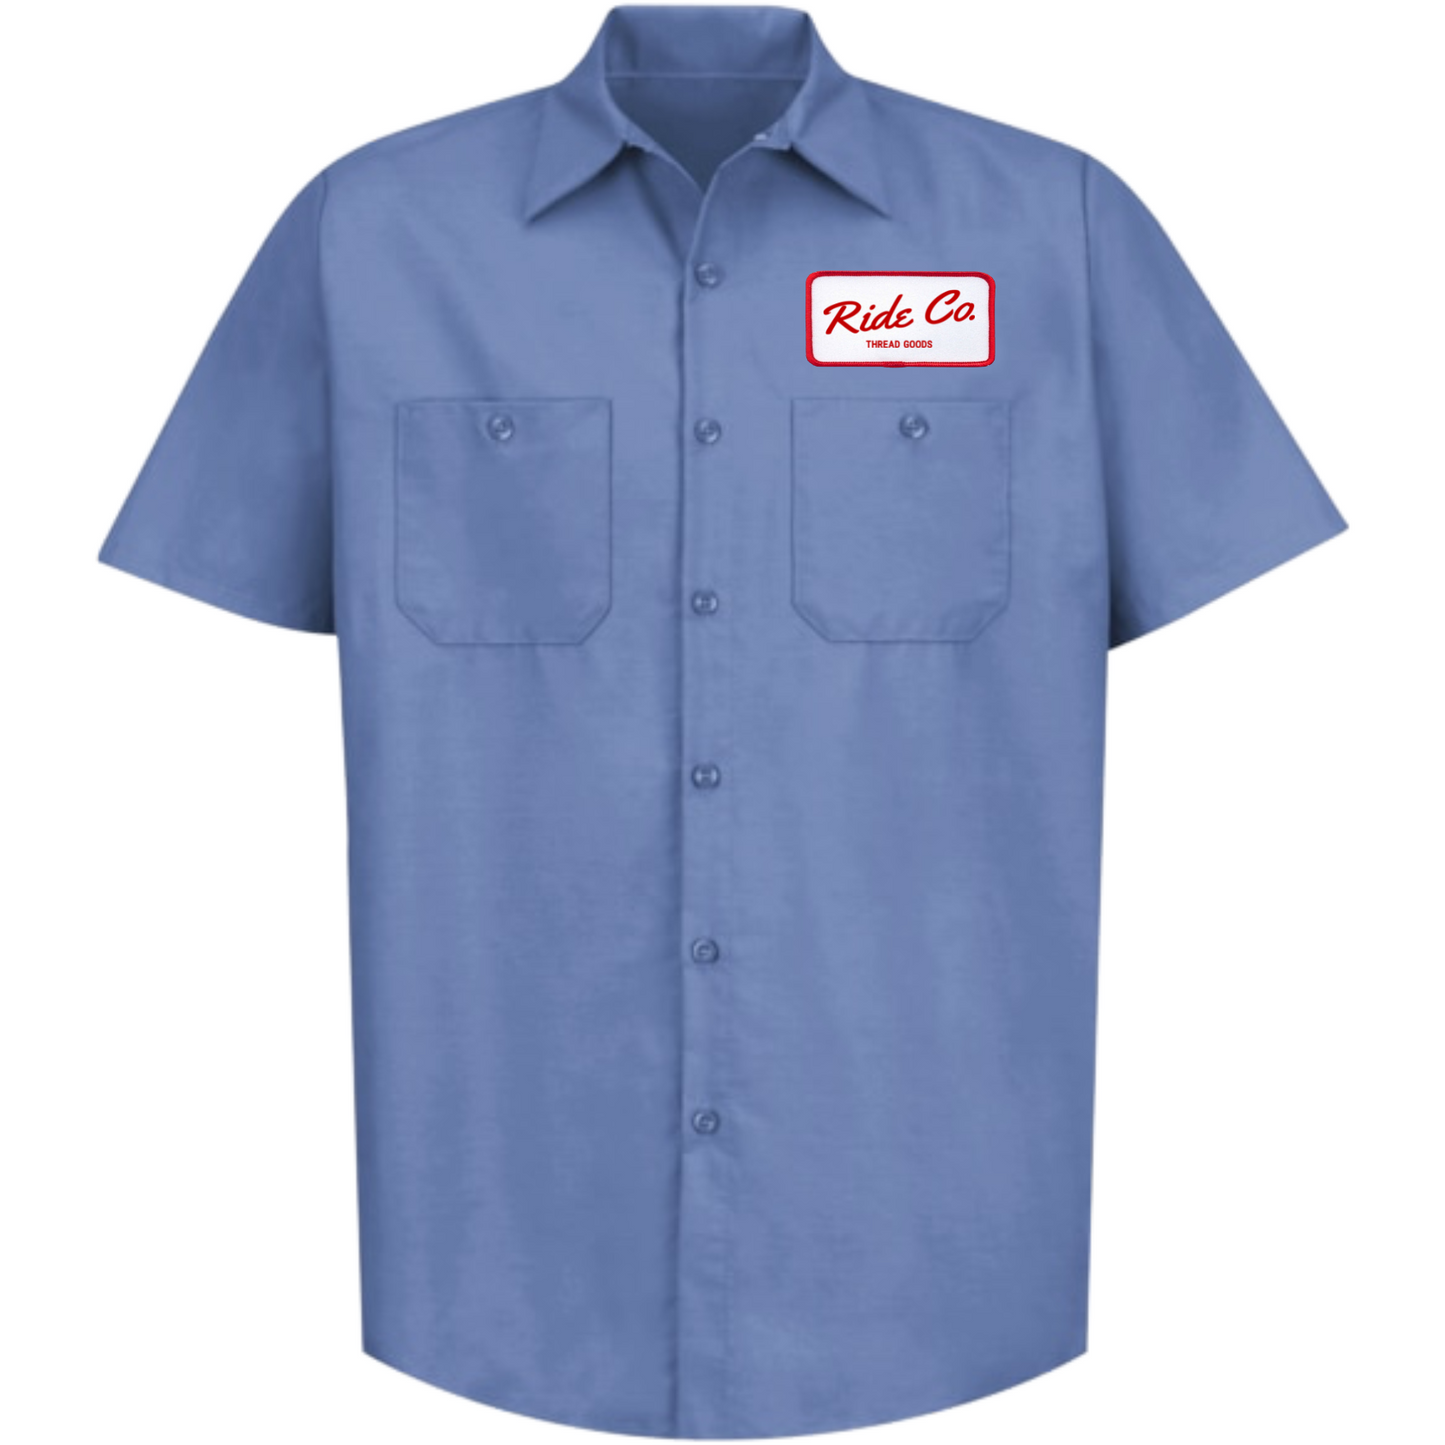 Ride Co. La camisa de trabajo